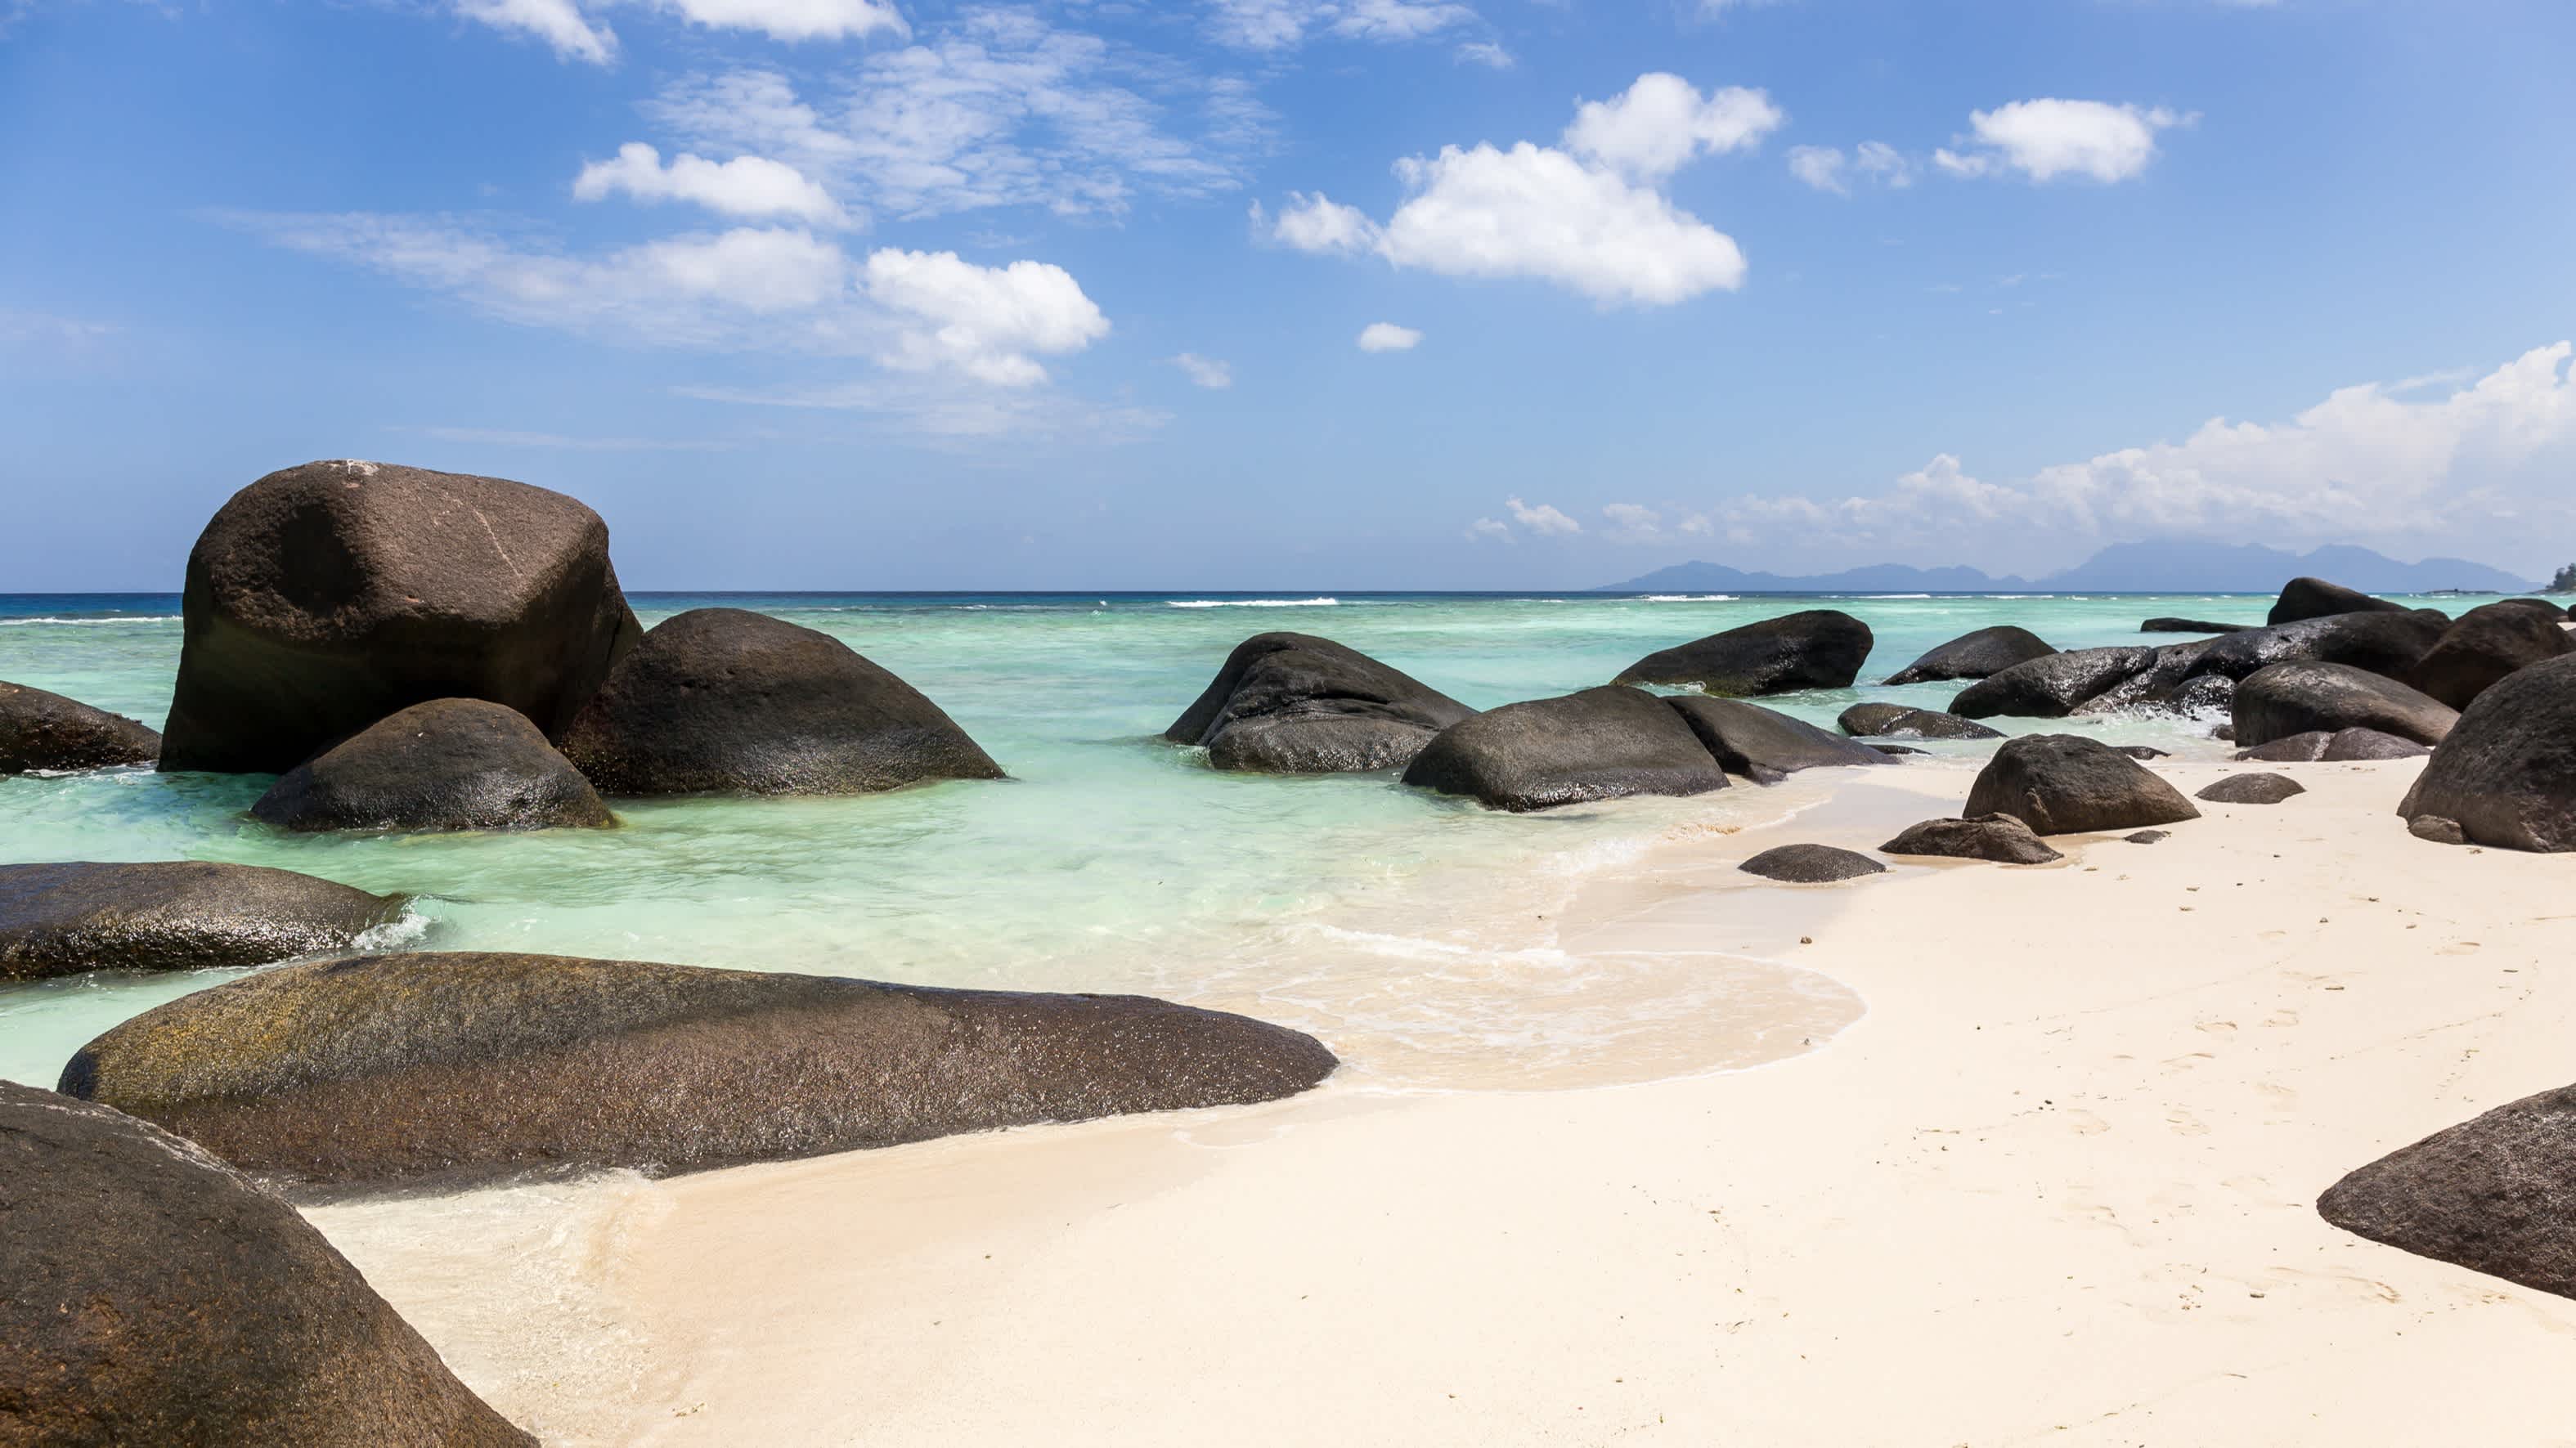 Belle plage et mer turquoise sur l'île Silhouette, Seychelles

